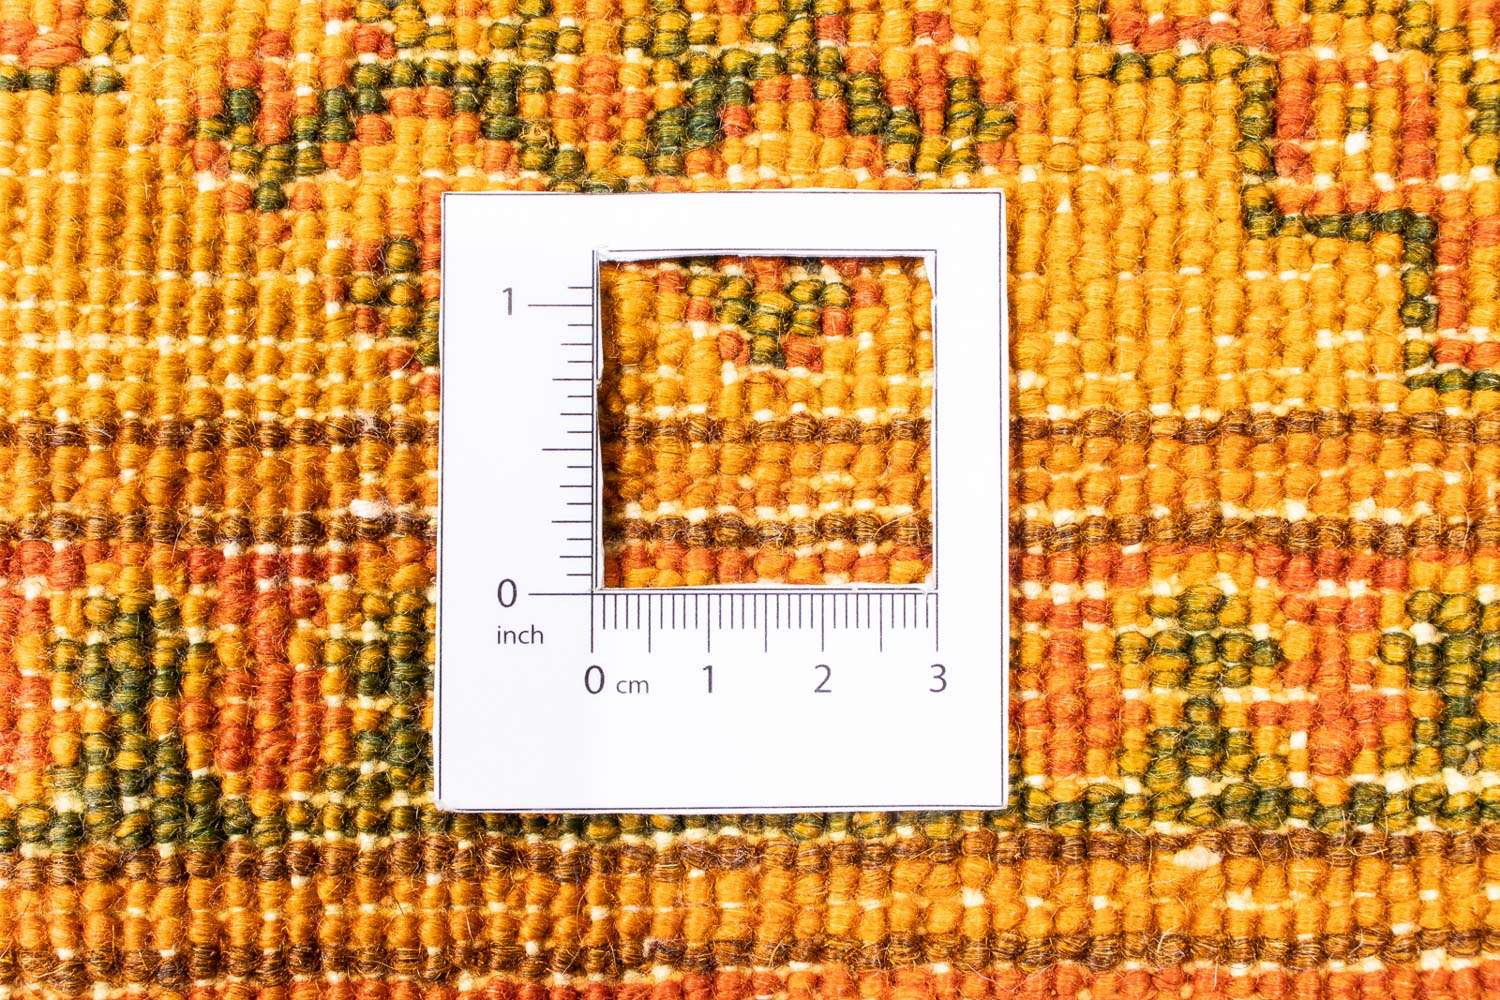 Dywan patchworkowy - 295 x 239 cm - brązowy